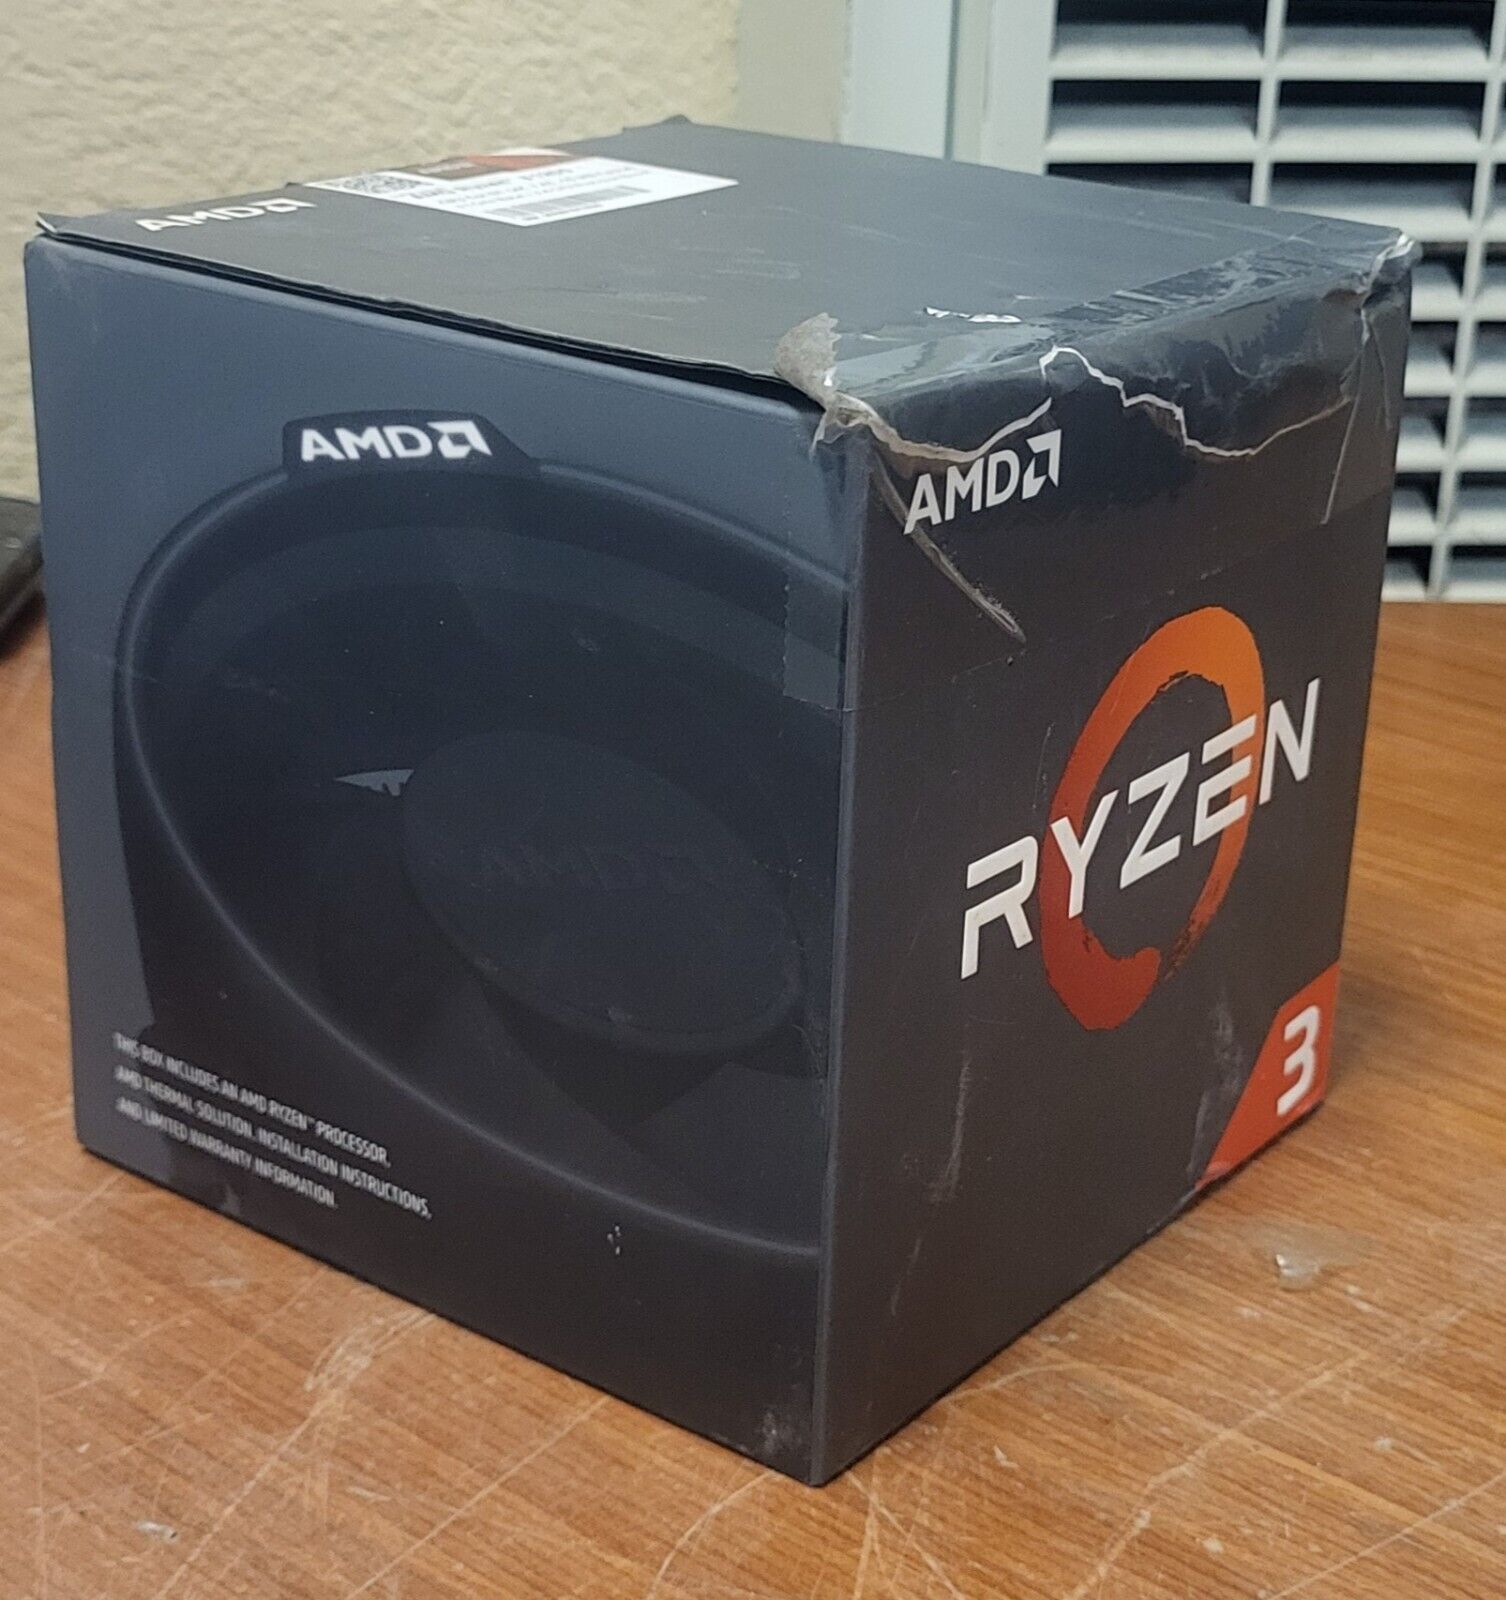 AMD Ryzen 3 1200 3.1GHz Quad-Core Processor (YD1200BBAEBOX) #775B